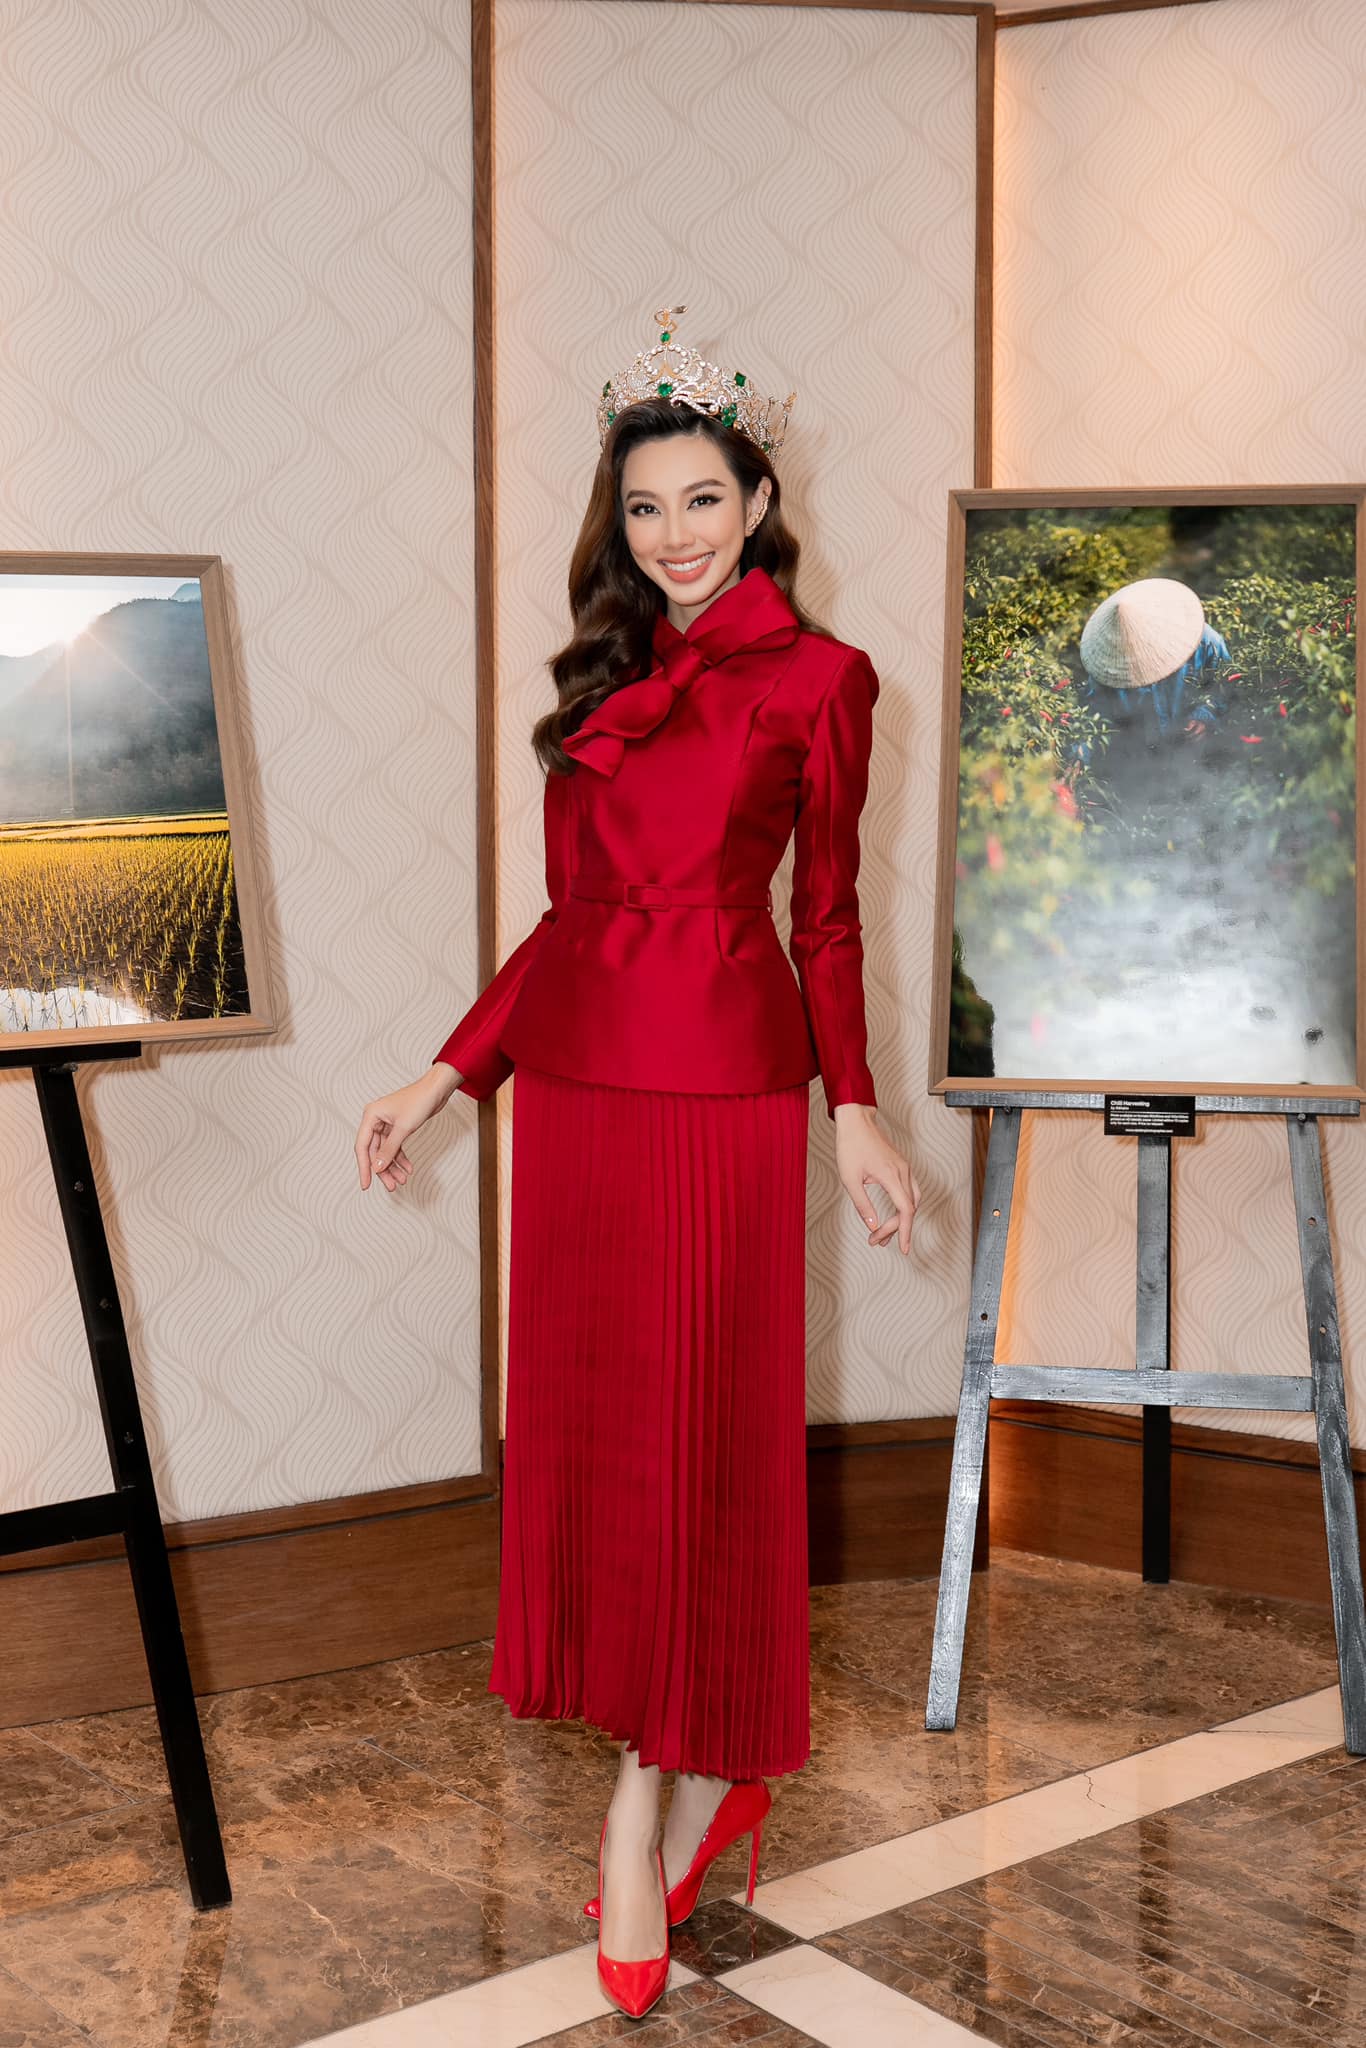 Không cần 'hở bạo' Hoa hậu Thùy Tiên vẫn cuốn hút nhờ thần thái 'sang chảnh' ngút ngàn, bộ trang phục được CĐM khen 'nức nở' - Ảnh 3